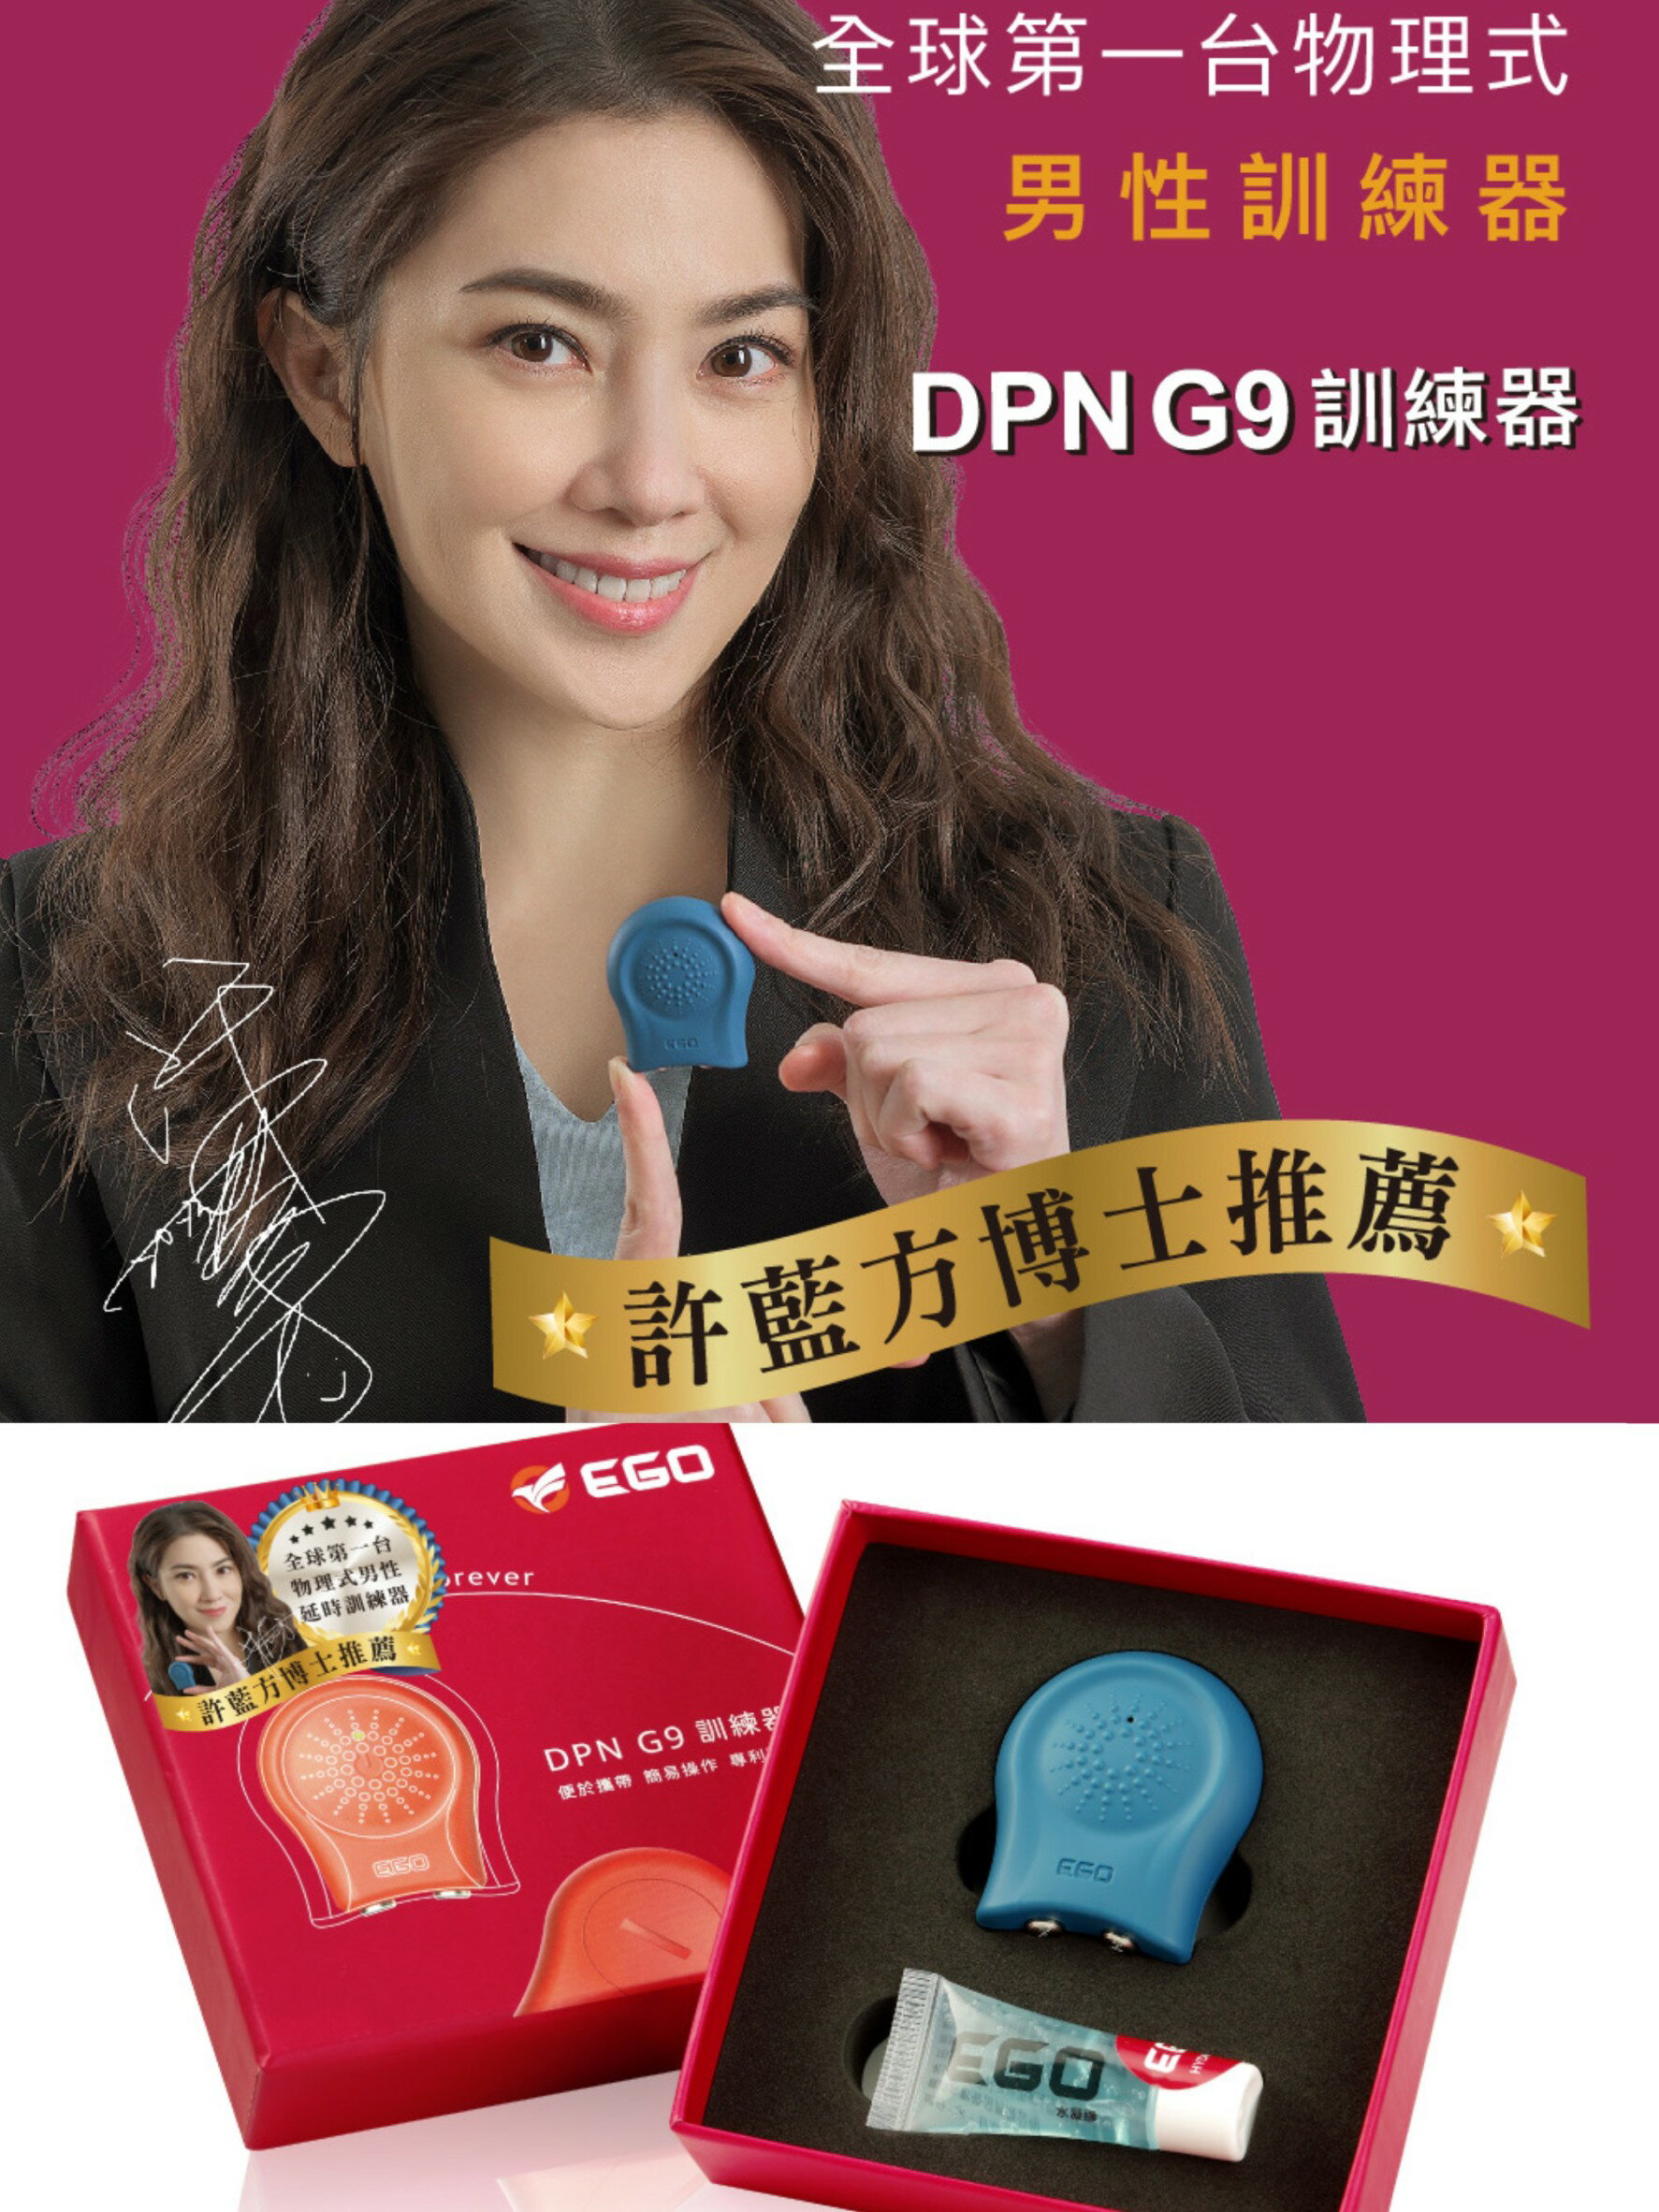 送2好禮 EGO DPNG9 男性訓練器 許藍方博士推薦 一年保固 DPN G9 台灣品牌